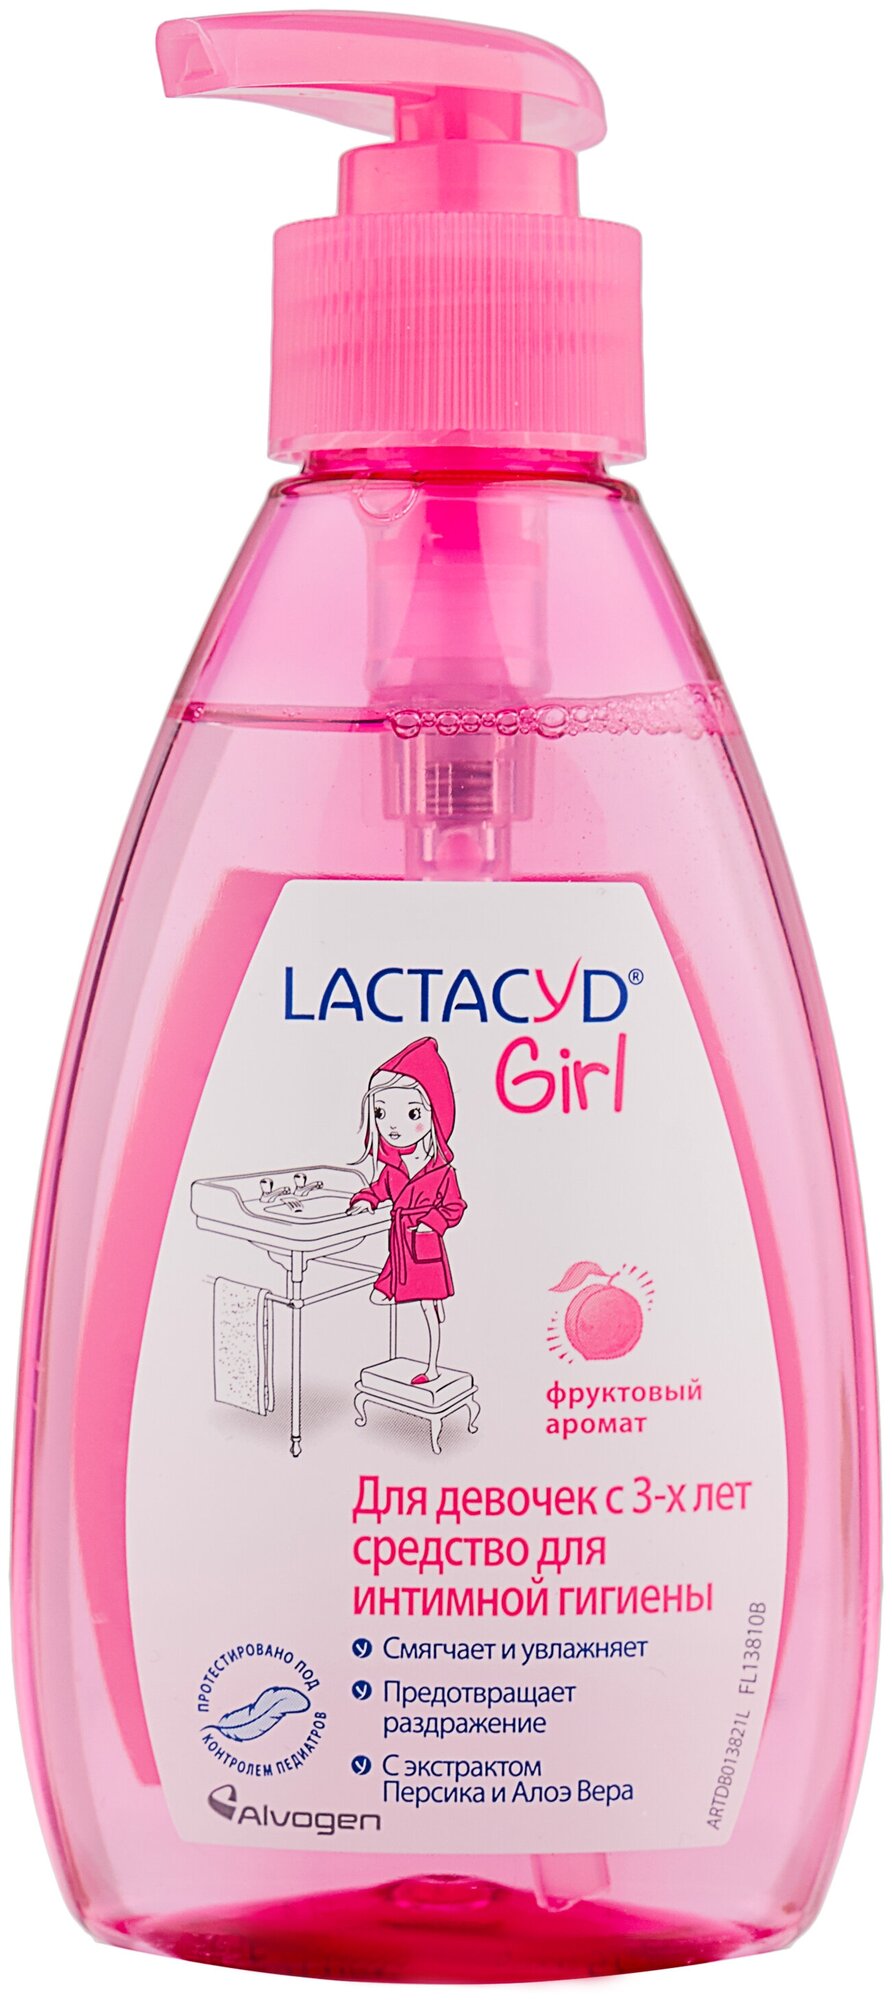 Lactacyd Girl средство для интимной гигиены девочек с 3-х лет / Лактацид гель для интимной гигиены для детей и подростков / Детское жидкое гель-мыло для подмывания интимных зон 200мл